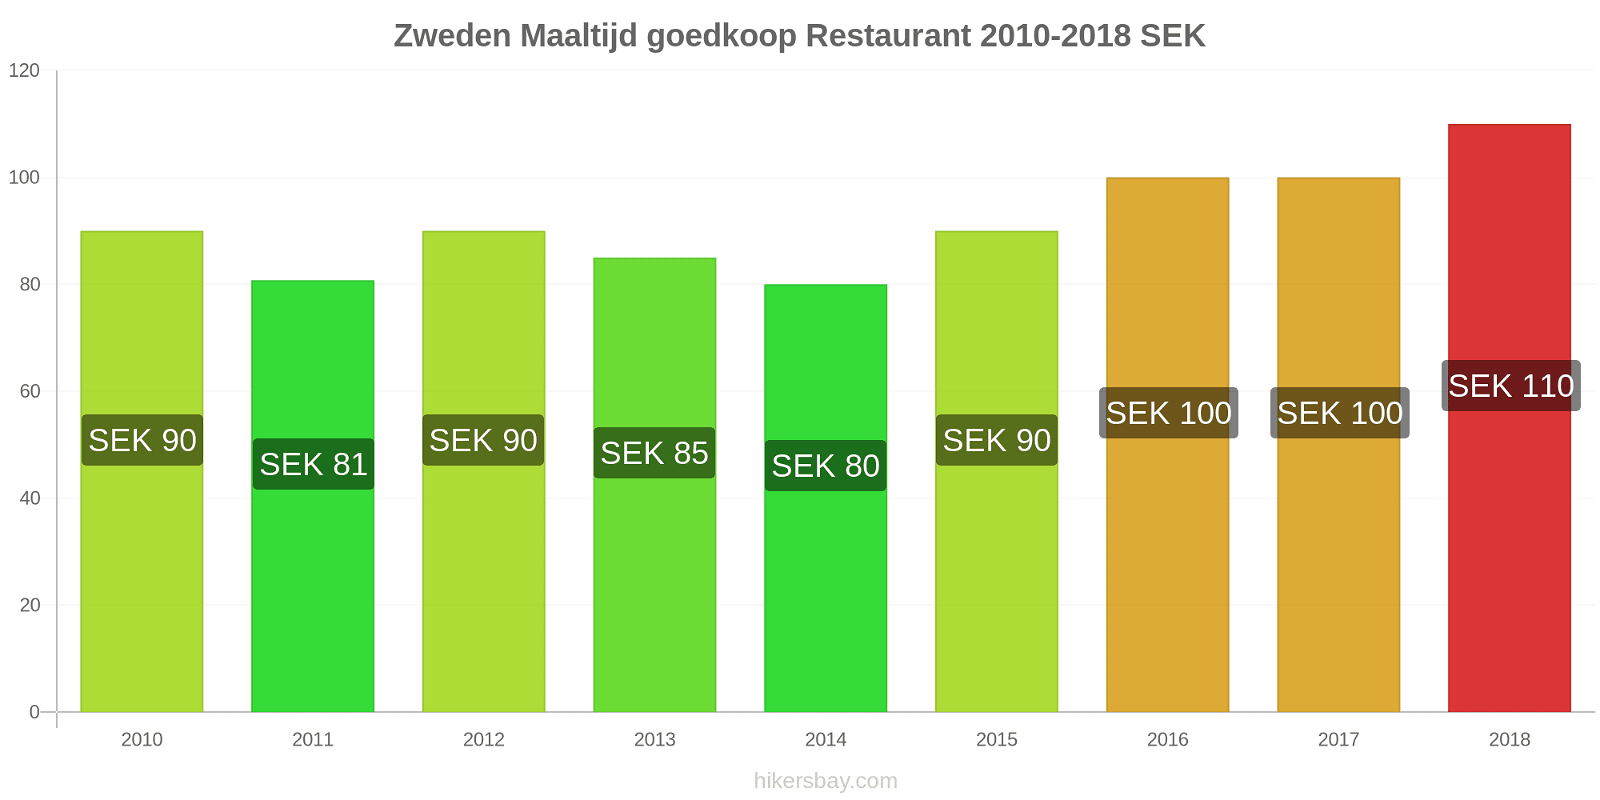 Zweden prijswijzigingen Maaltijd in een goedkoop restaurant hikersbay.com